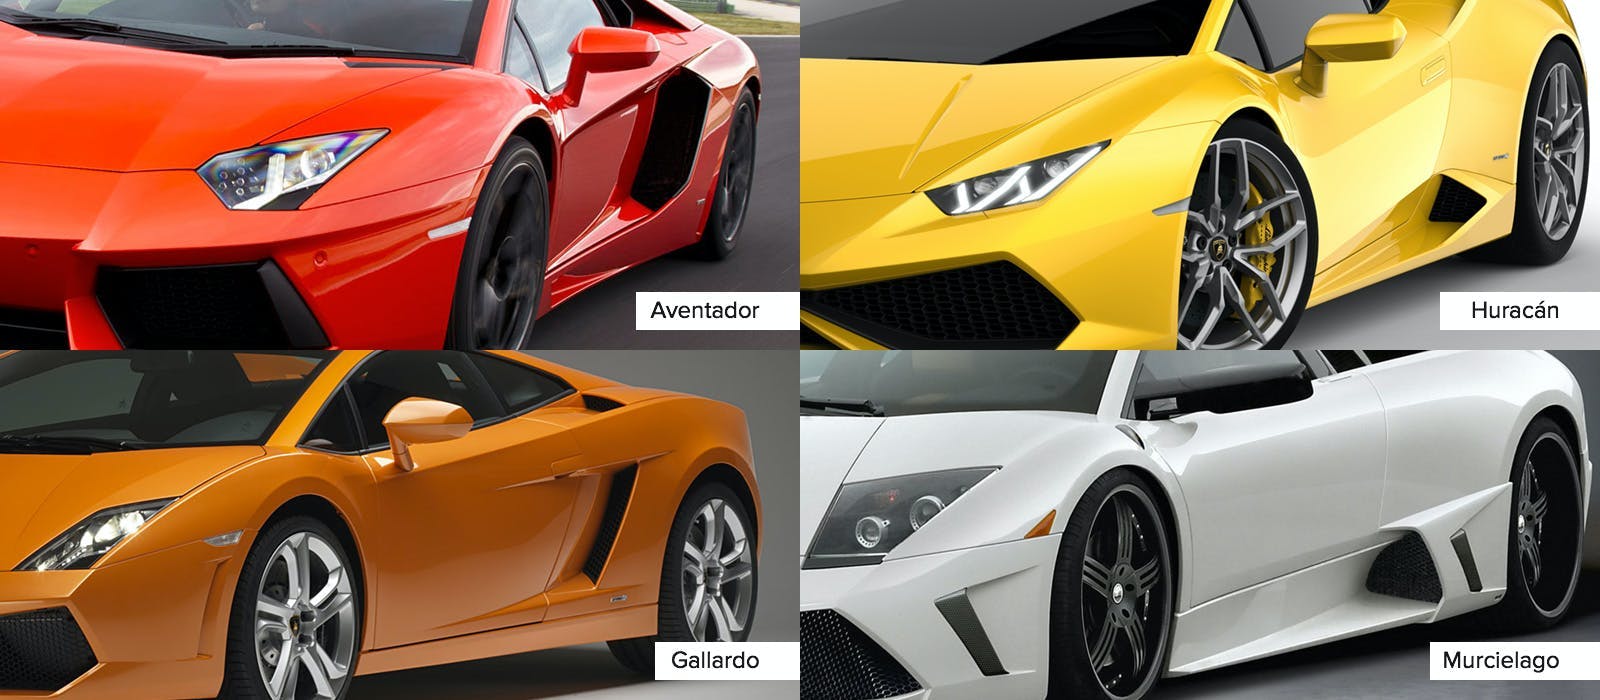 How To Tell Lamborginis Apart - Lamborghinis Compared